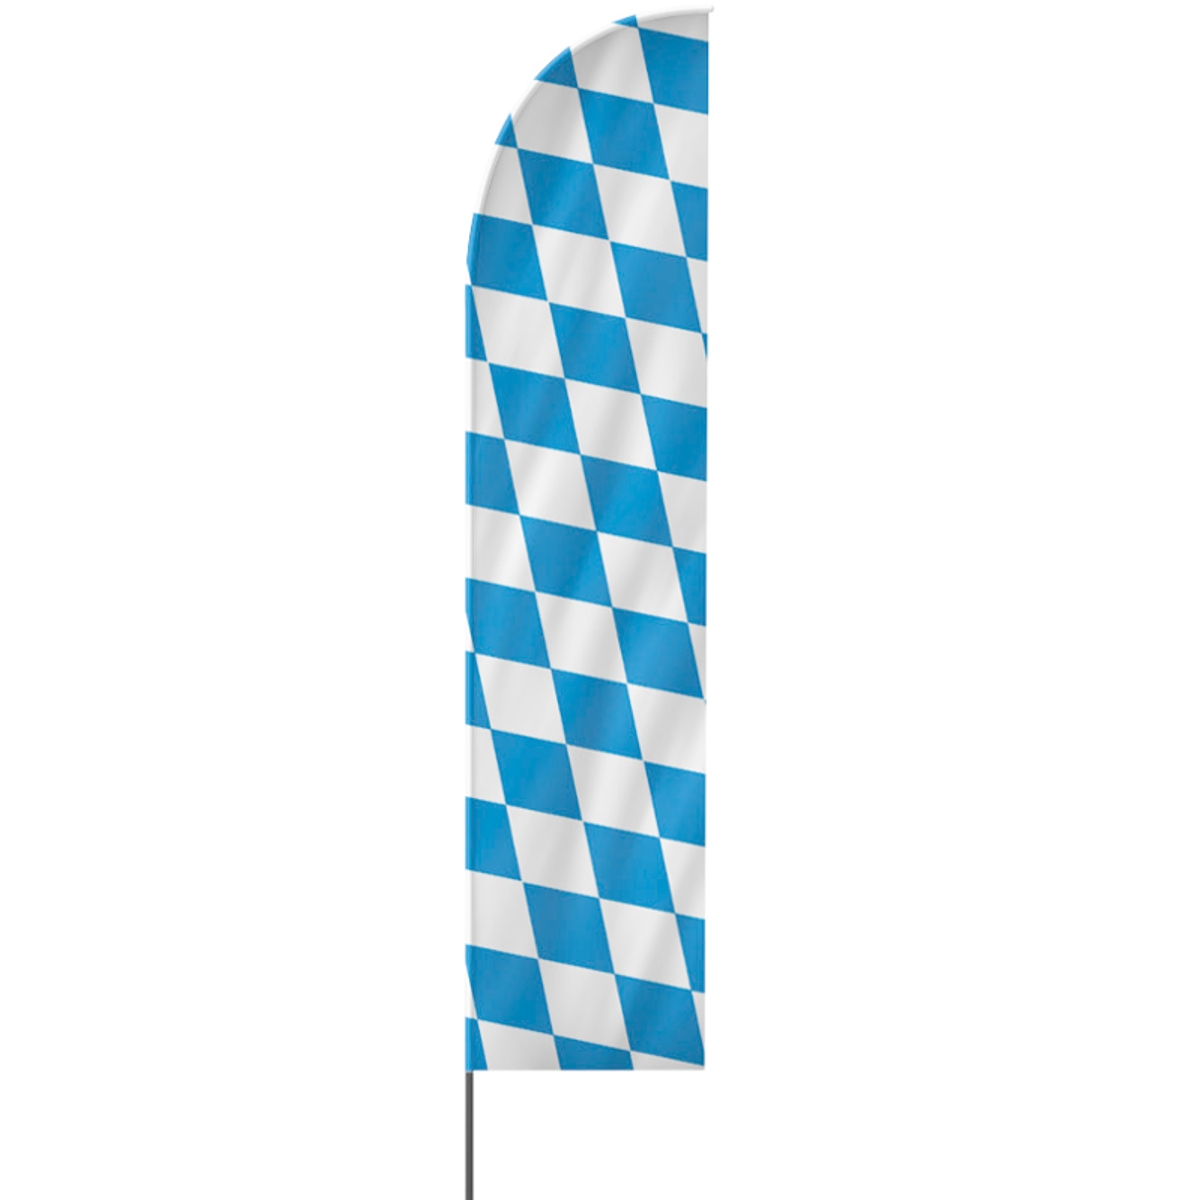 Straight | Oktoberfest Beachflag, blau weiß, verschiedene Größen, V1